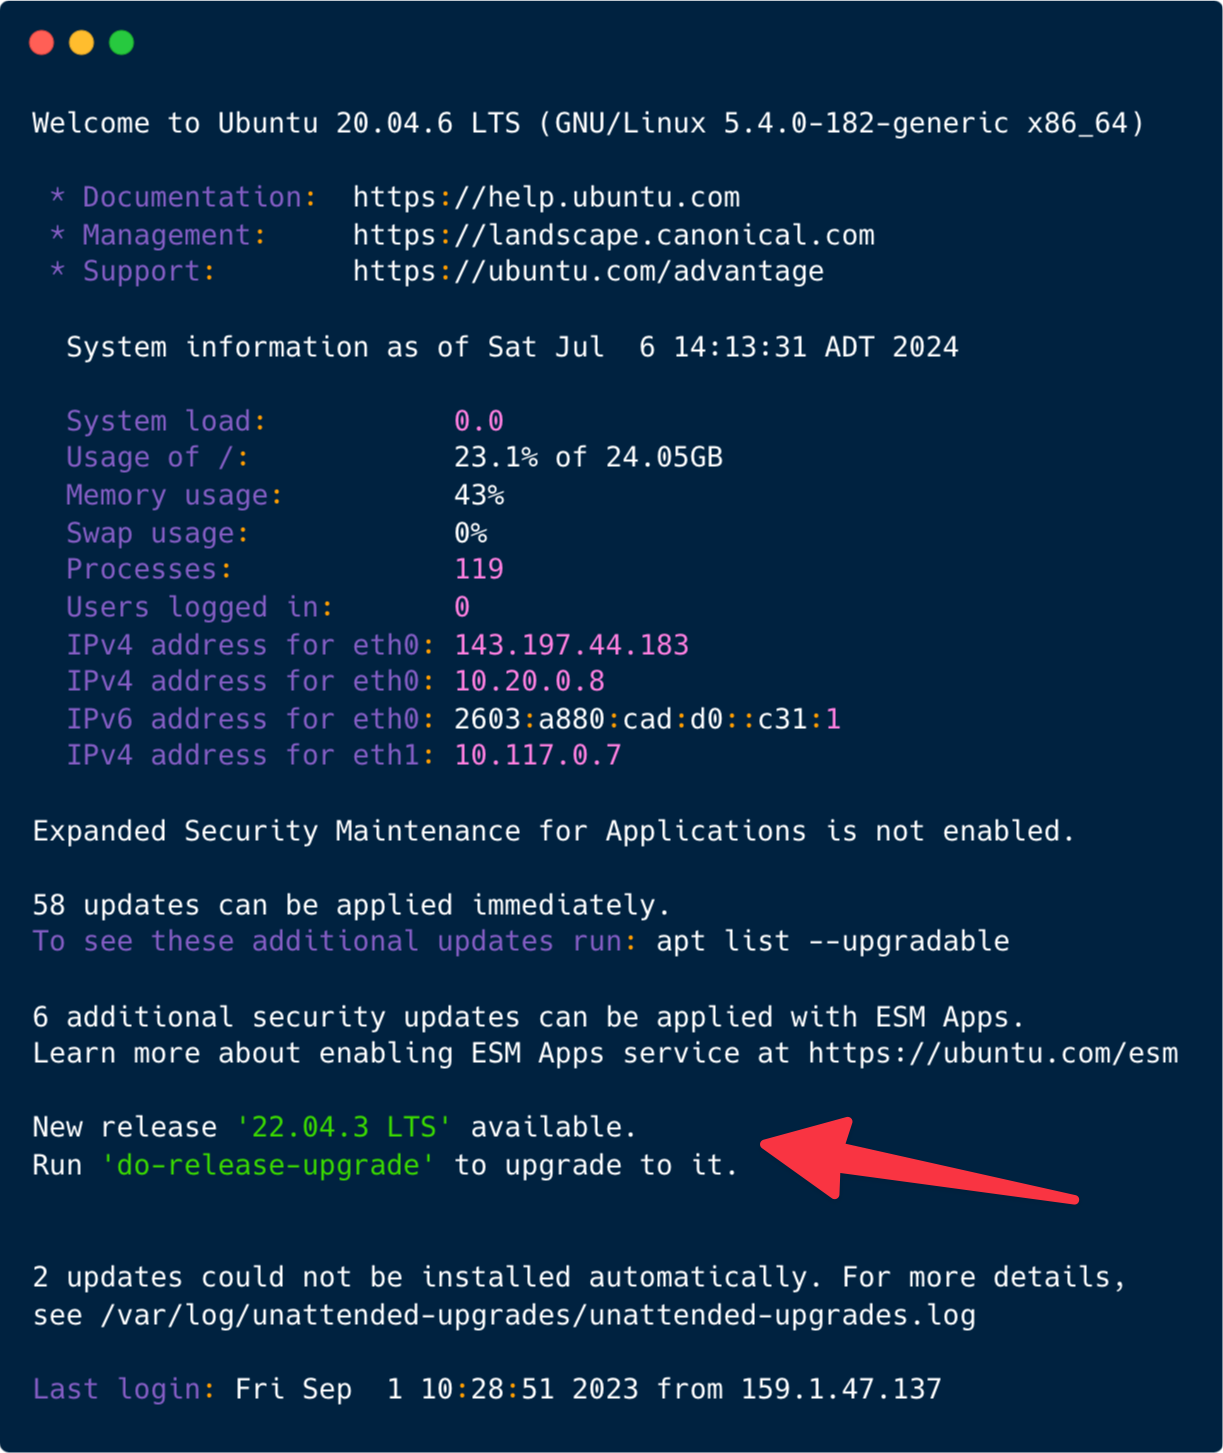 Screenshot of terminal showing Ubuntu welcome message.